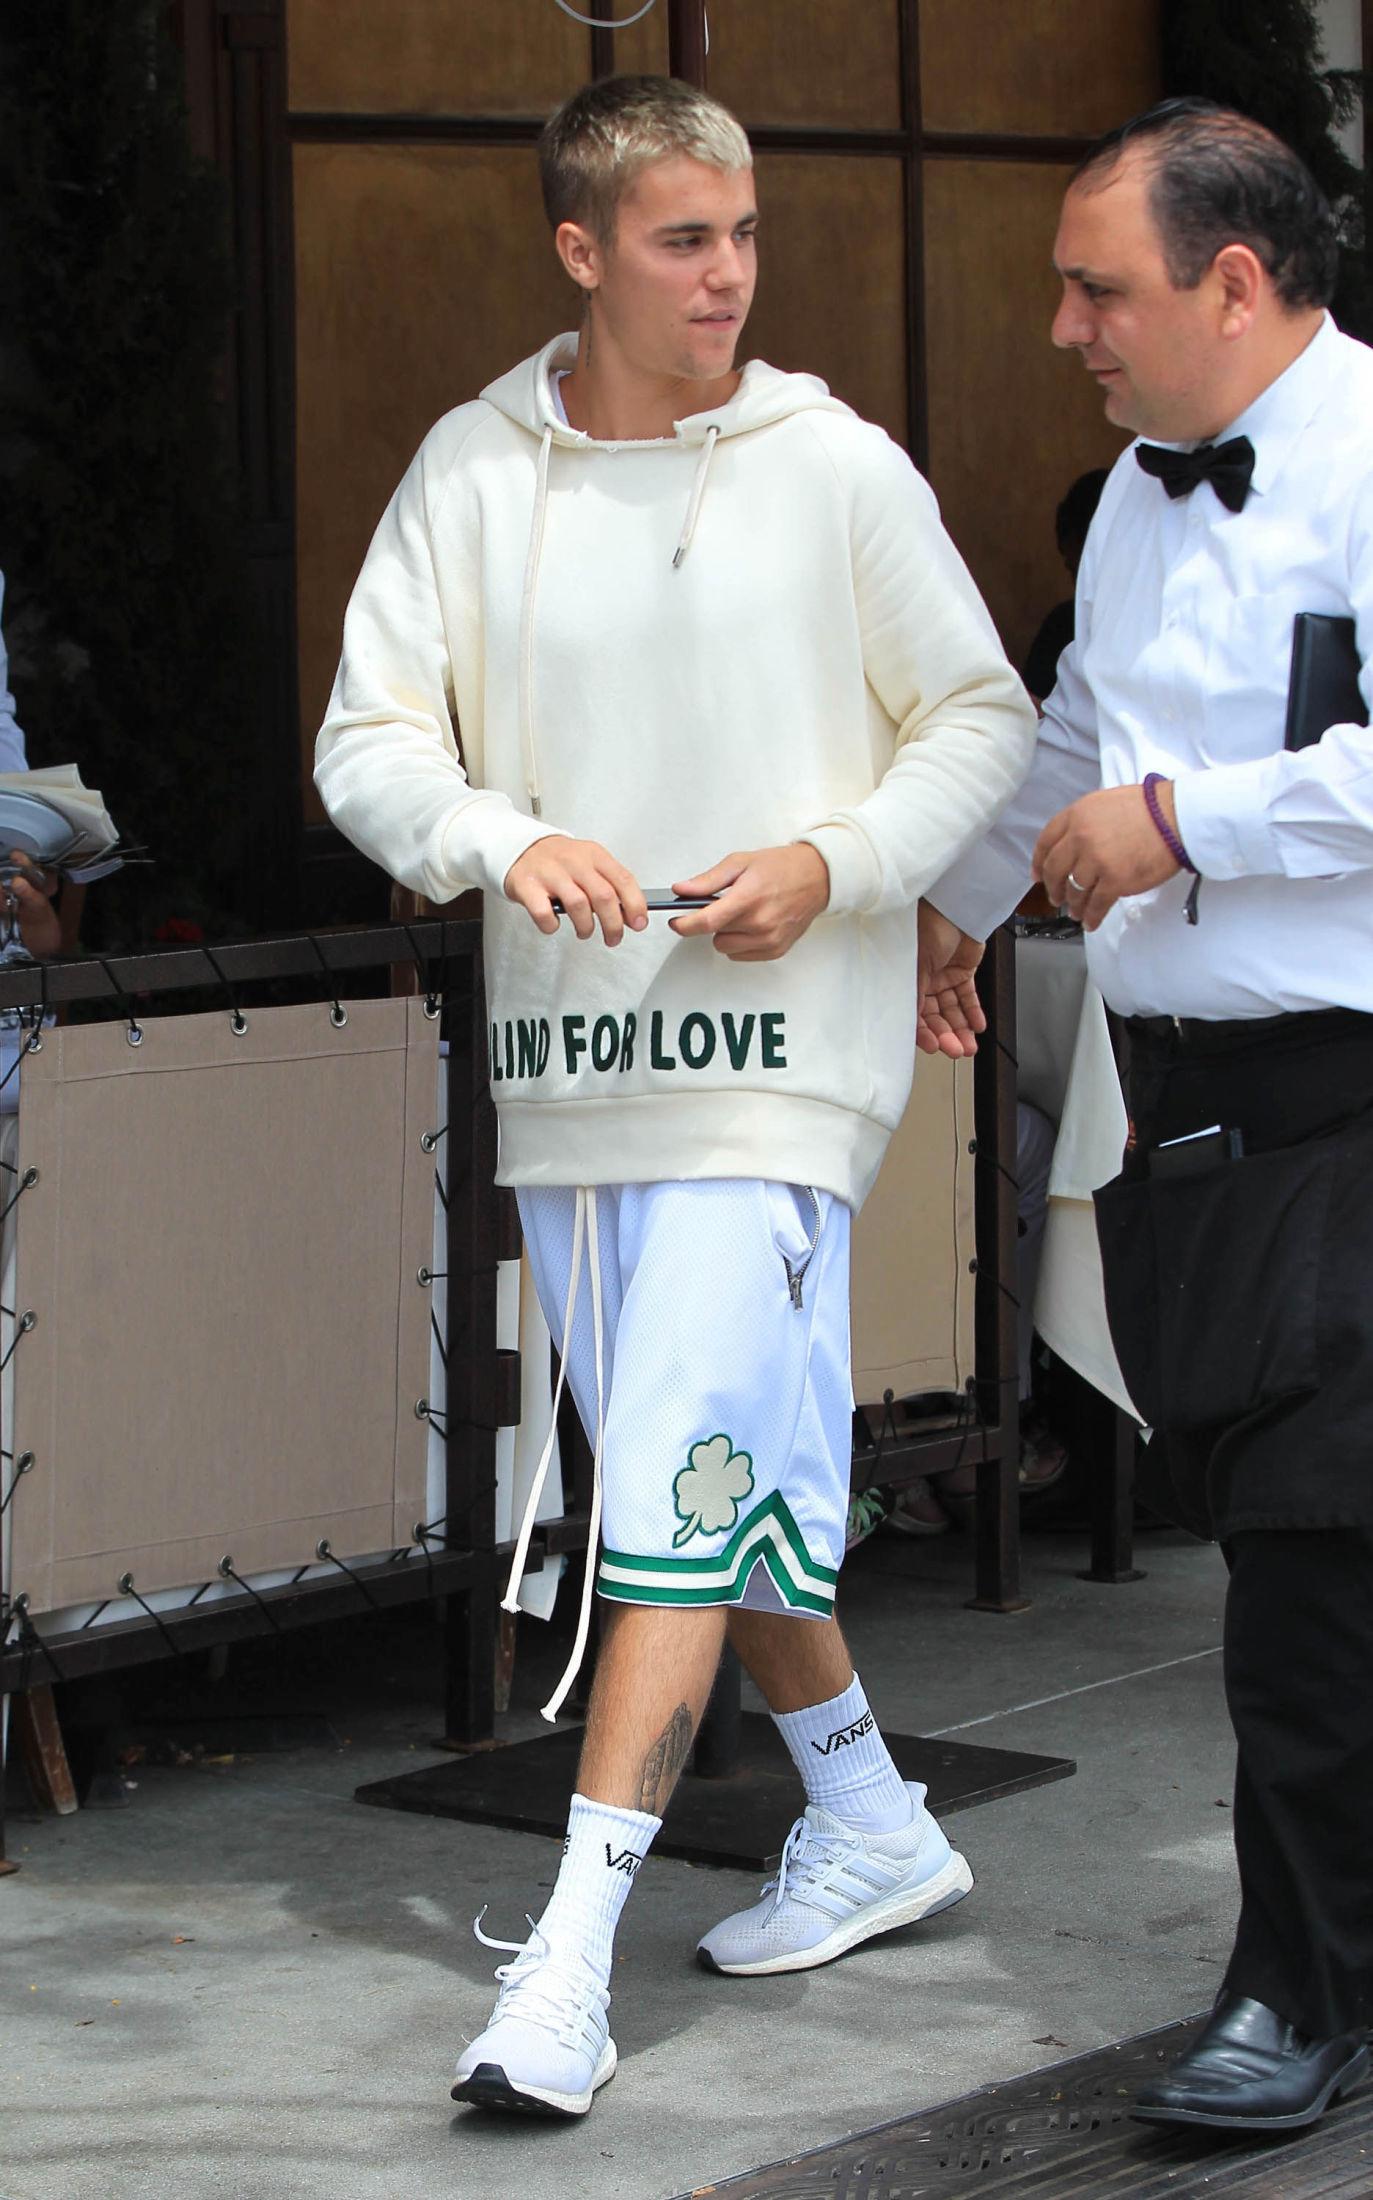 TENNISSOKKER: Bieber har ofte på seg tennissokker i forskjellige farger.